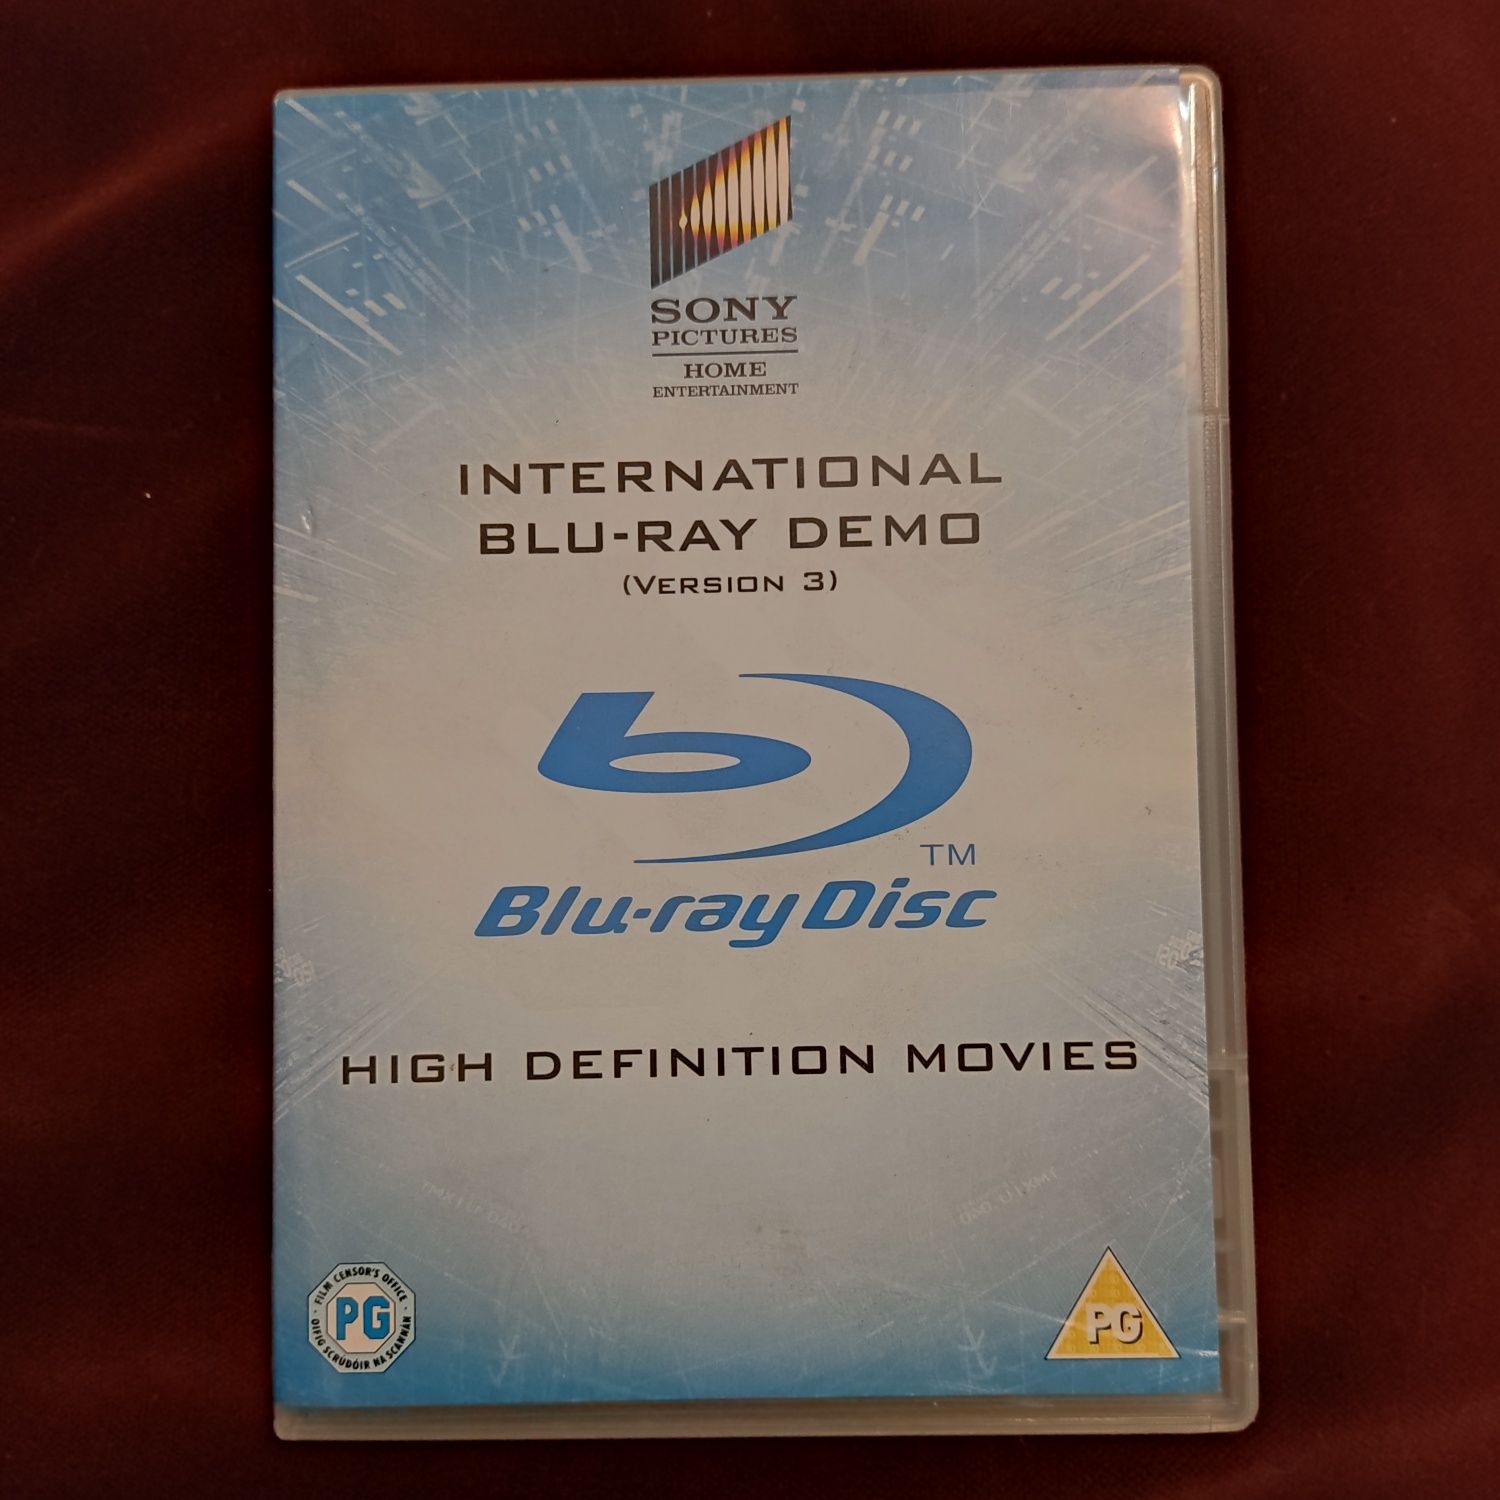 International blu-ray demo version 3